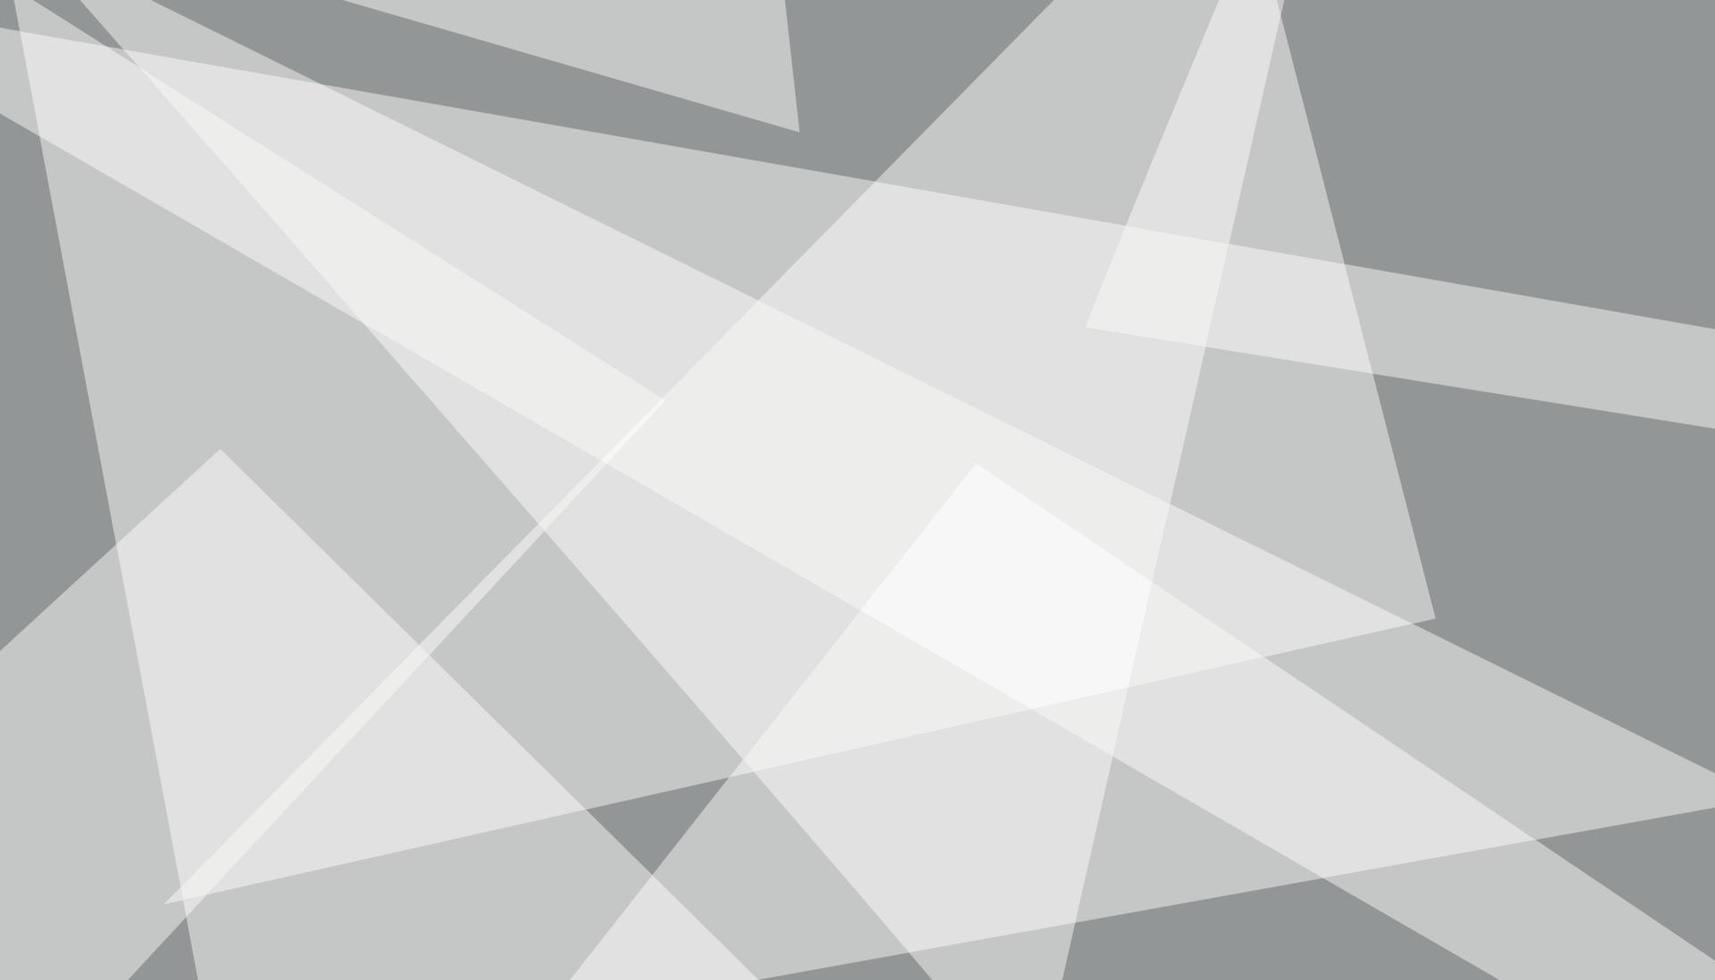 abstrakter Hintergrund mit Dreiecken. moderner geometrischer Hintergrundvektor. moderner schwarzer Hintergrund mit weißen Dreiecksschichten in zufälligem Muster. vektor